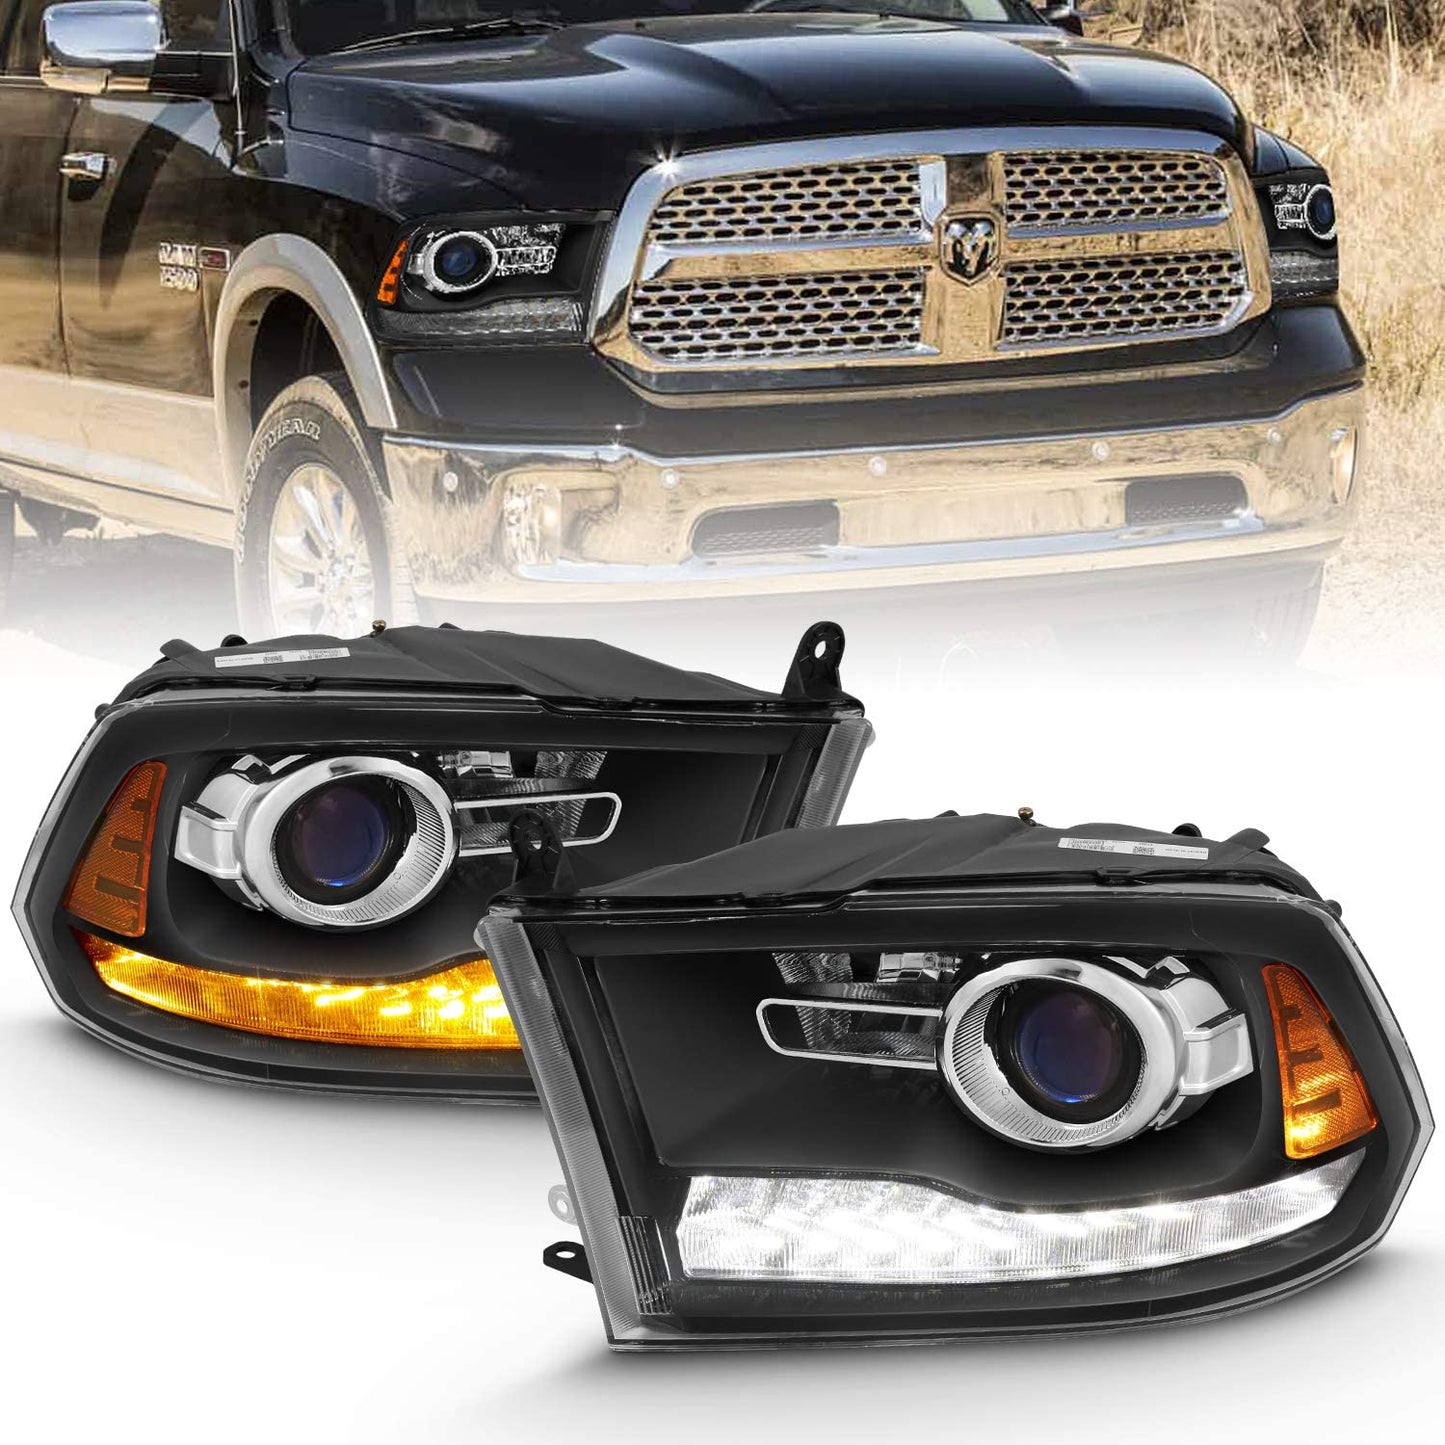 AmeriLite LED Headlight Bulb DRL Directional for Dodge Ram 1500 2500 3500; passenger and driver side